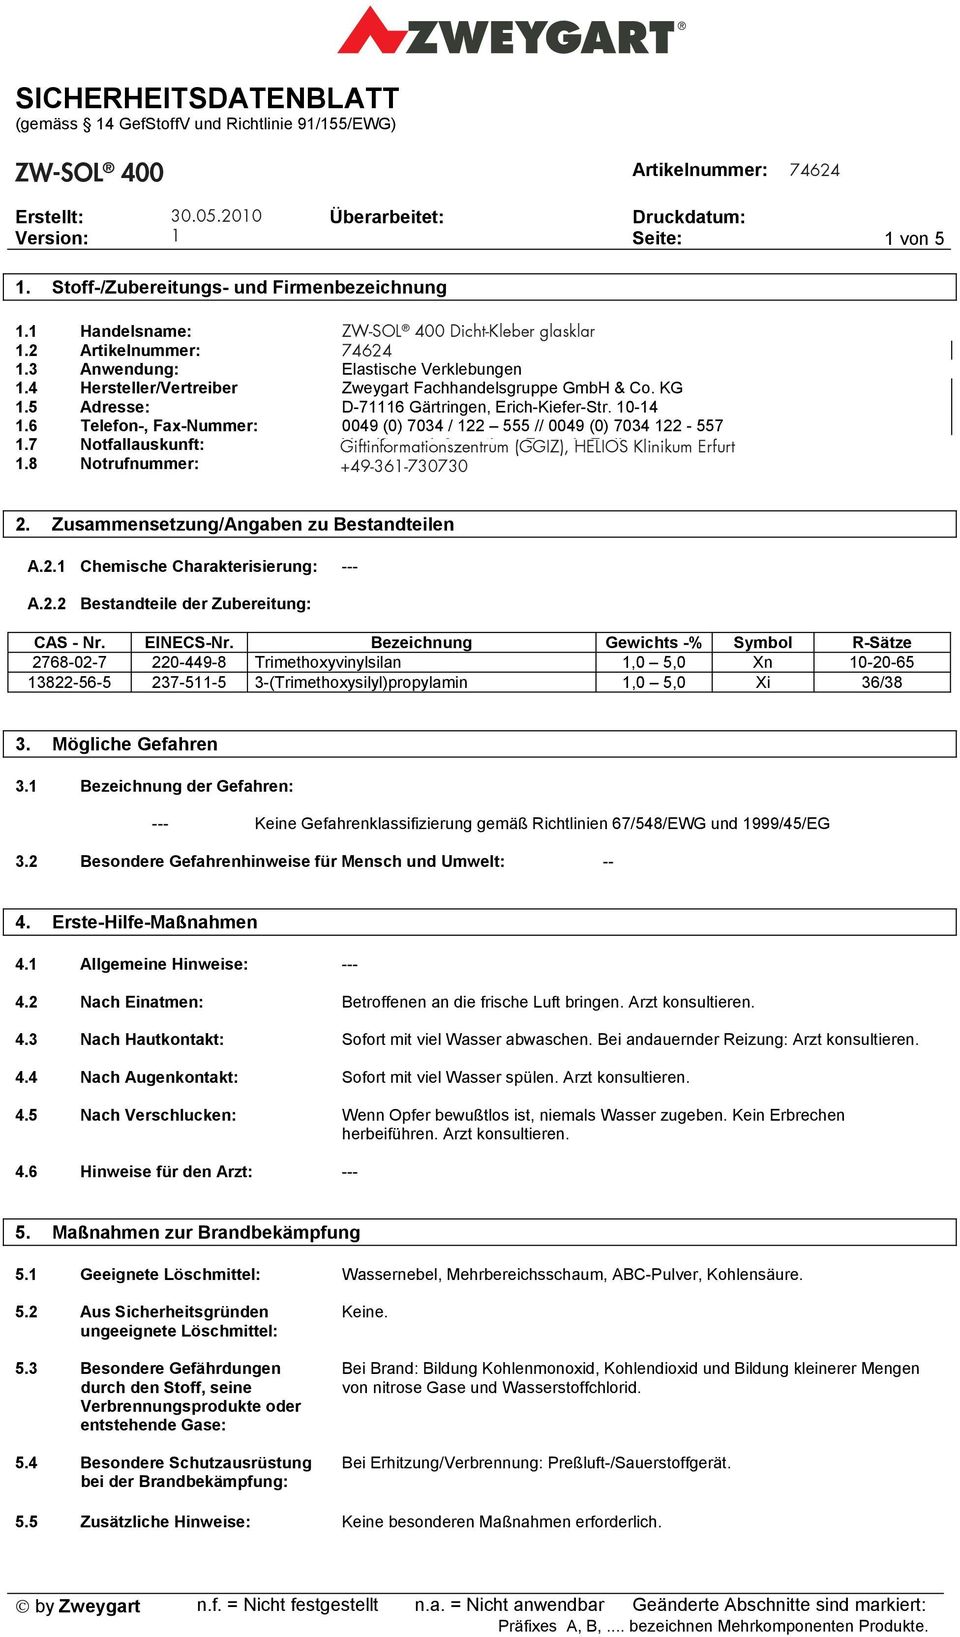 7 Notfallauskunft: Giftinformationszentrum Vergiftungs-Informations-Zentrale (GGIZ), HELIOS Freiburg Klinikum Erfurt 1.8 Notrufnummer: +49-361-730730 0049 (0) 761 / 19 240 2.